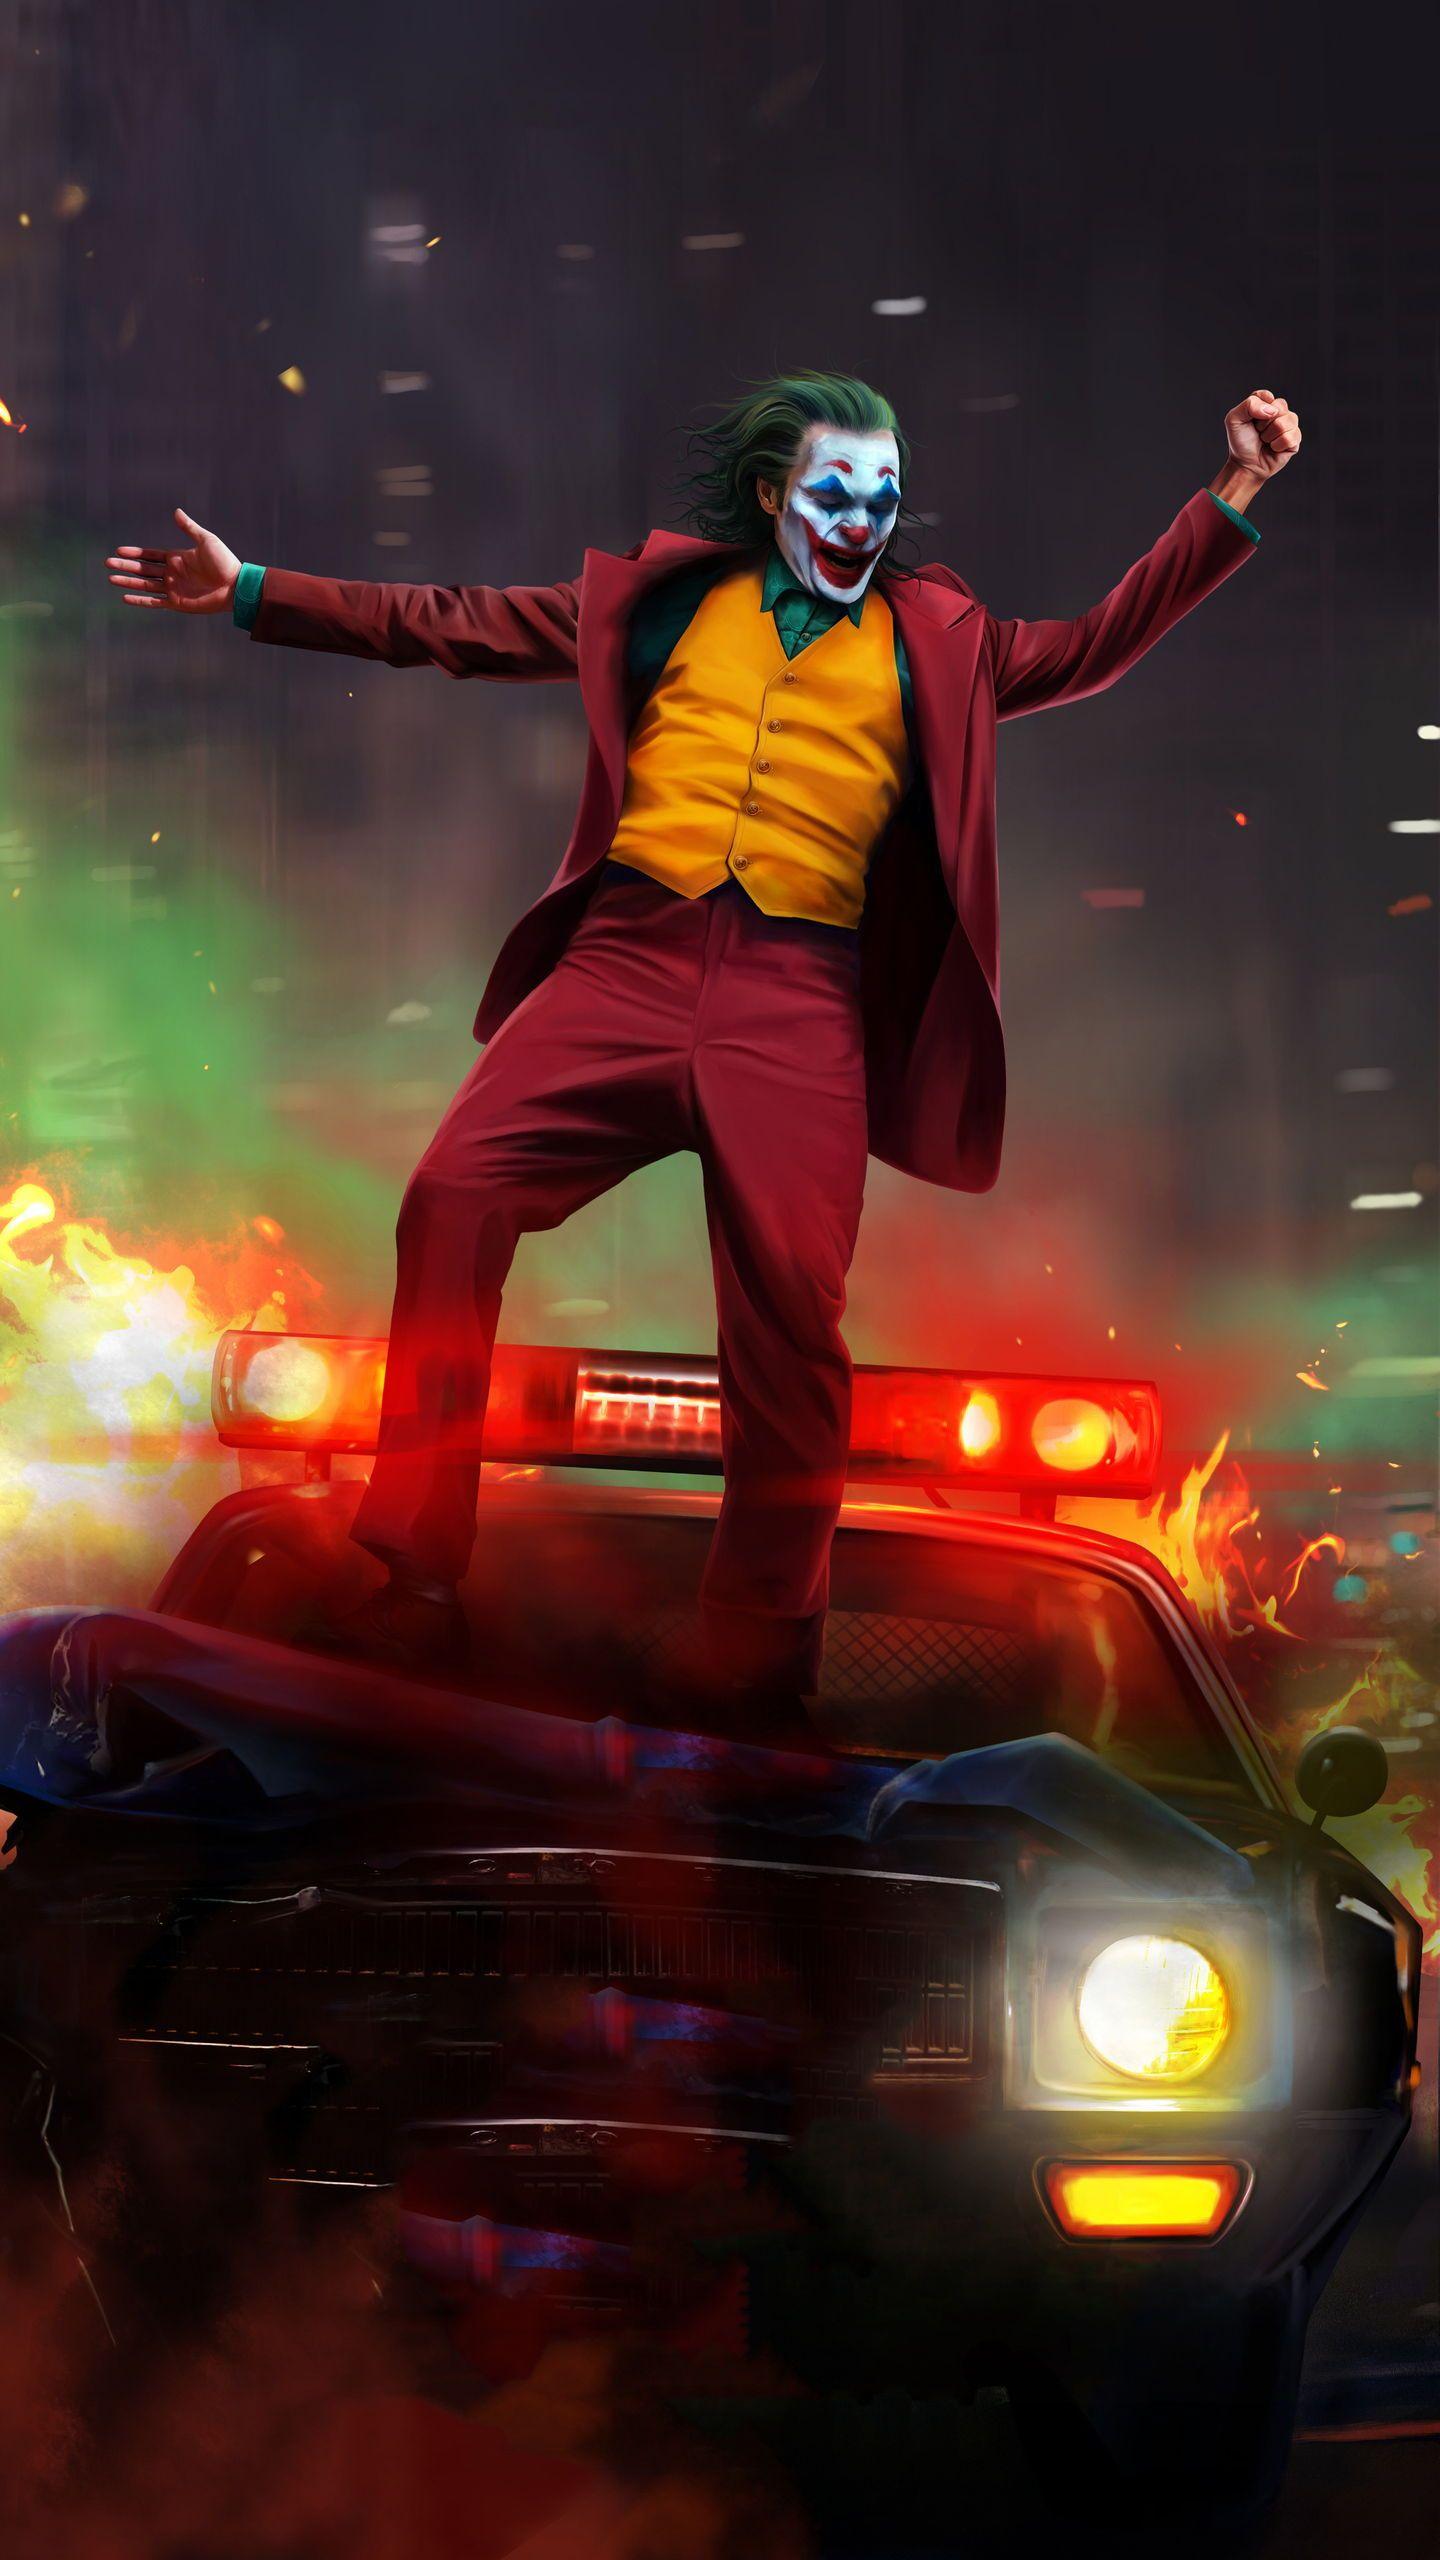 Joker Review: A Dark Tale And Joaquin Phoenix Deserves An Oscar